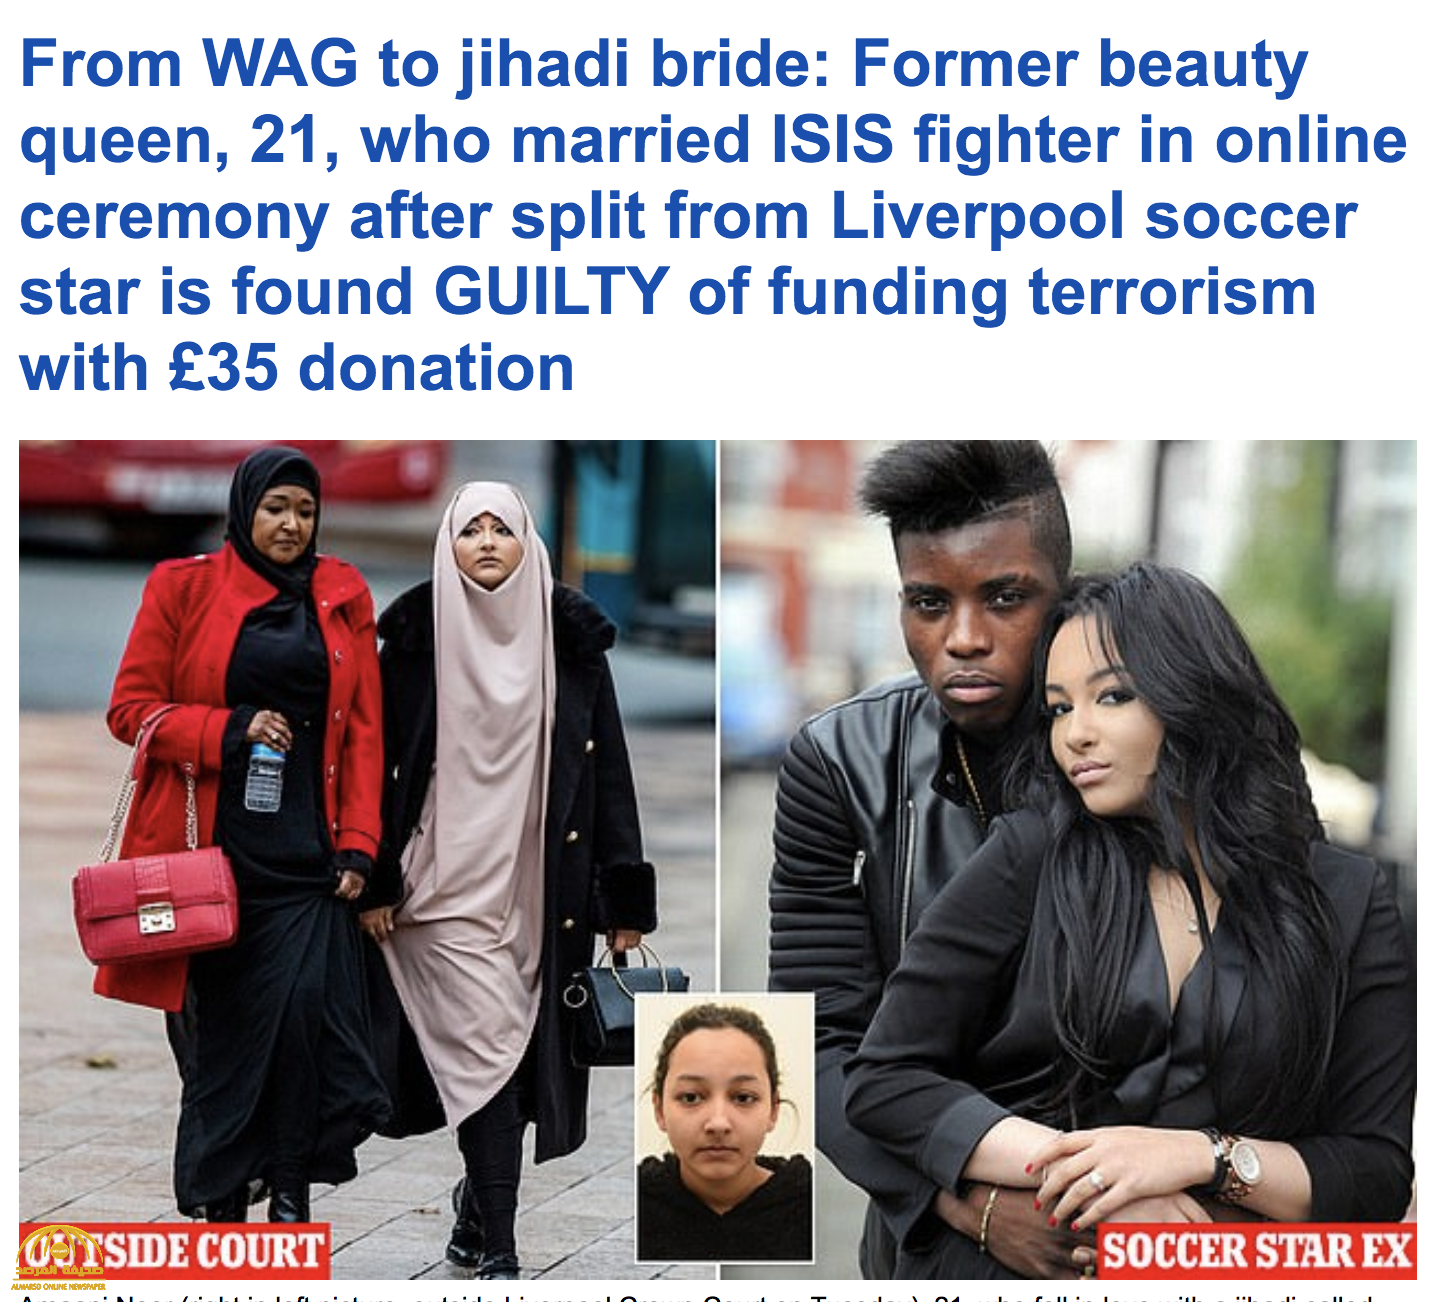 ملكة جمال بريطانيا وصديقة لاعب ليفربول الإنجليزي تقع في شباك داعش ! - فيديو وصور